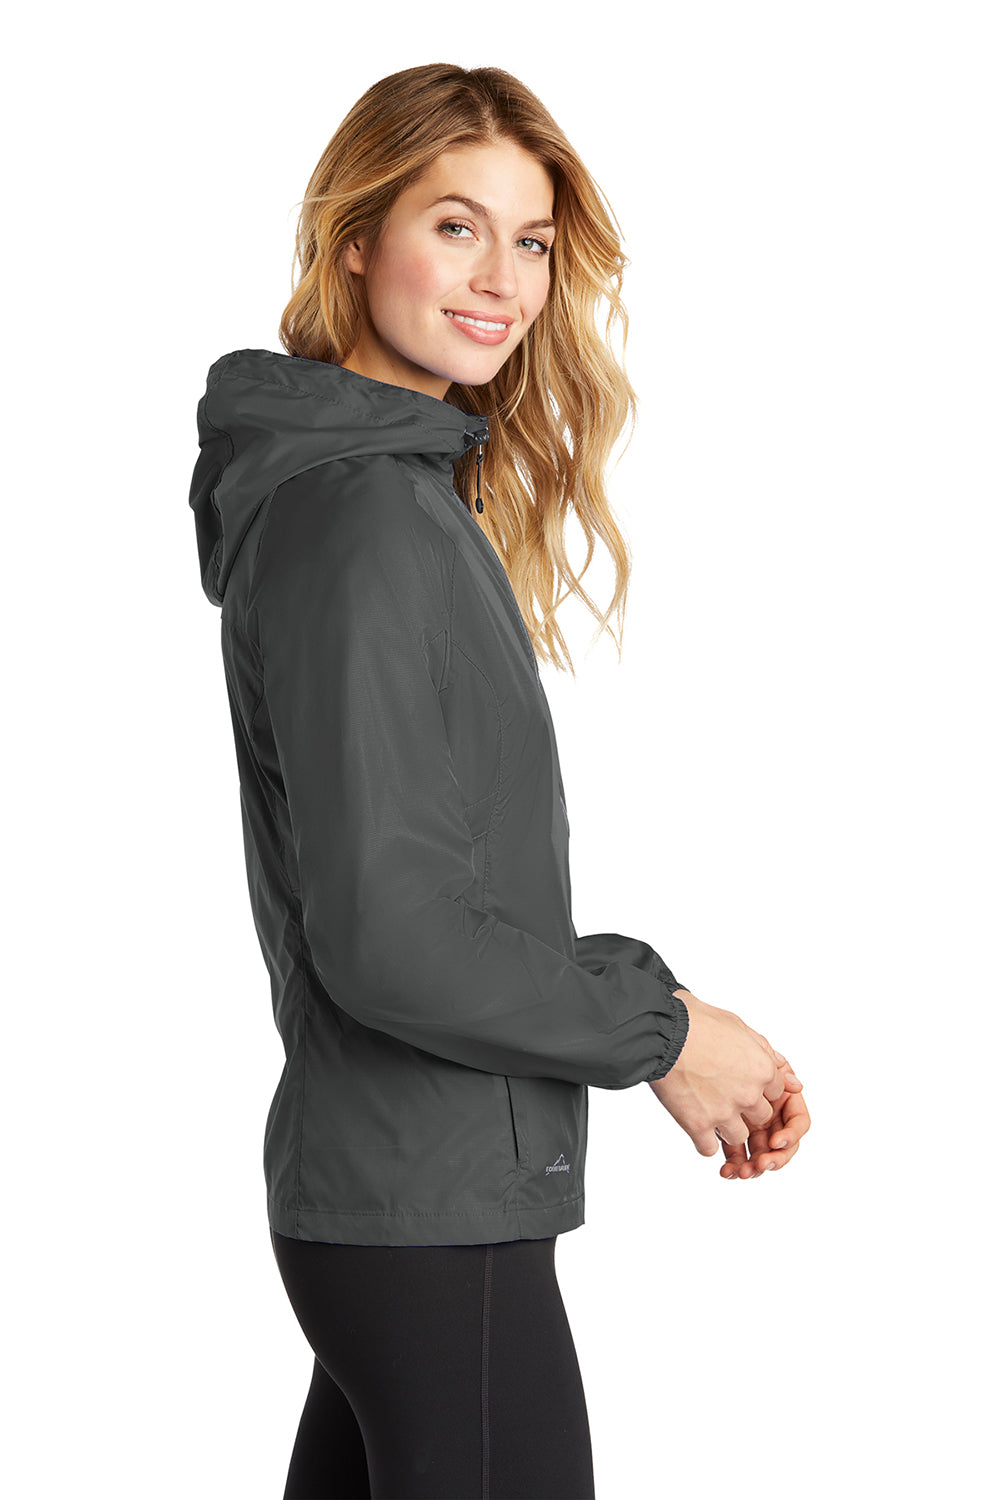 Eddie Bauer EB501 Womens Packable Wind Resistant Full Zip Hooded Jacket Steel Grey Model Side